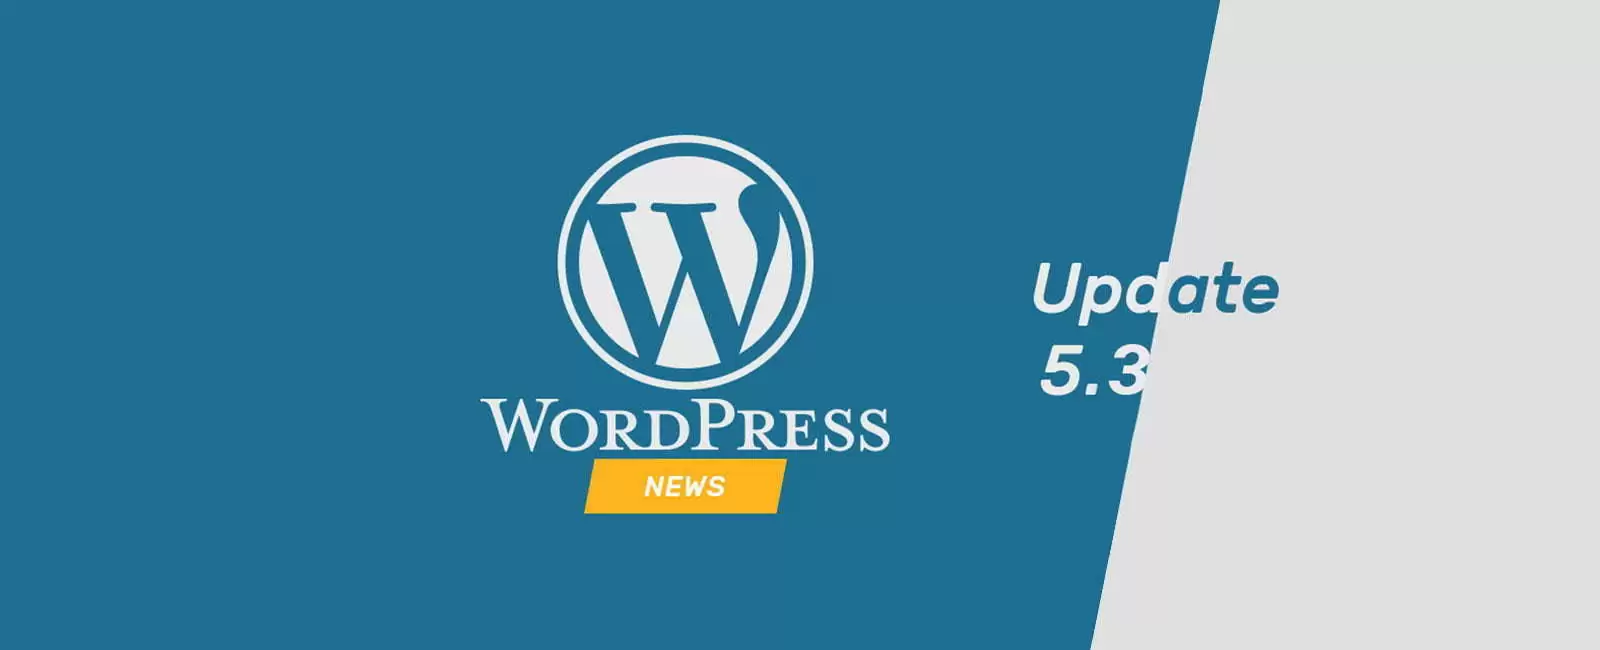 Update WordPress 5.3